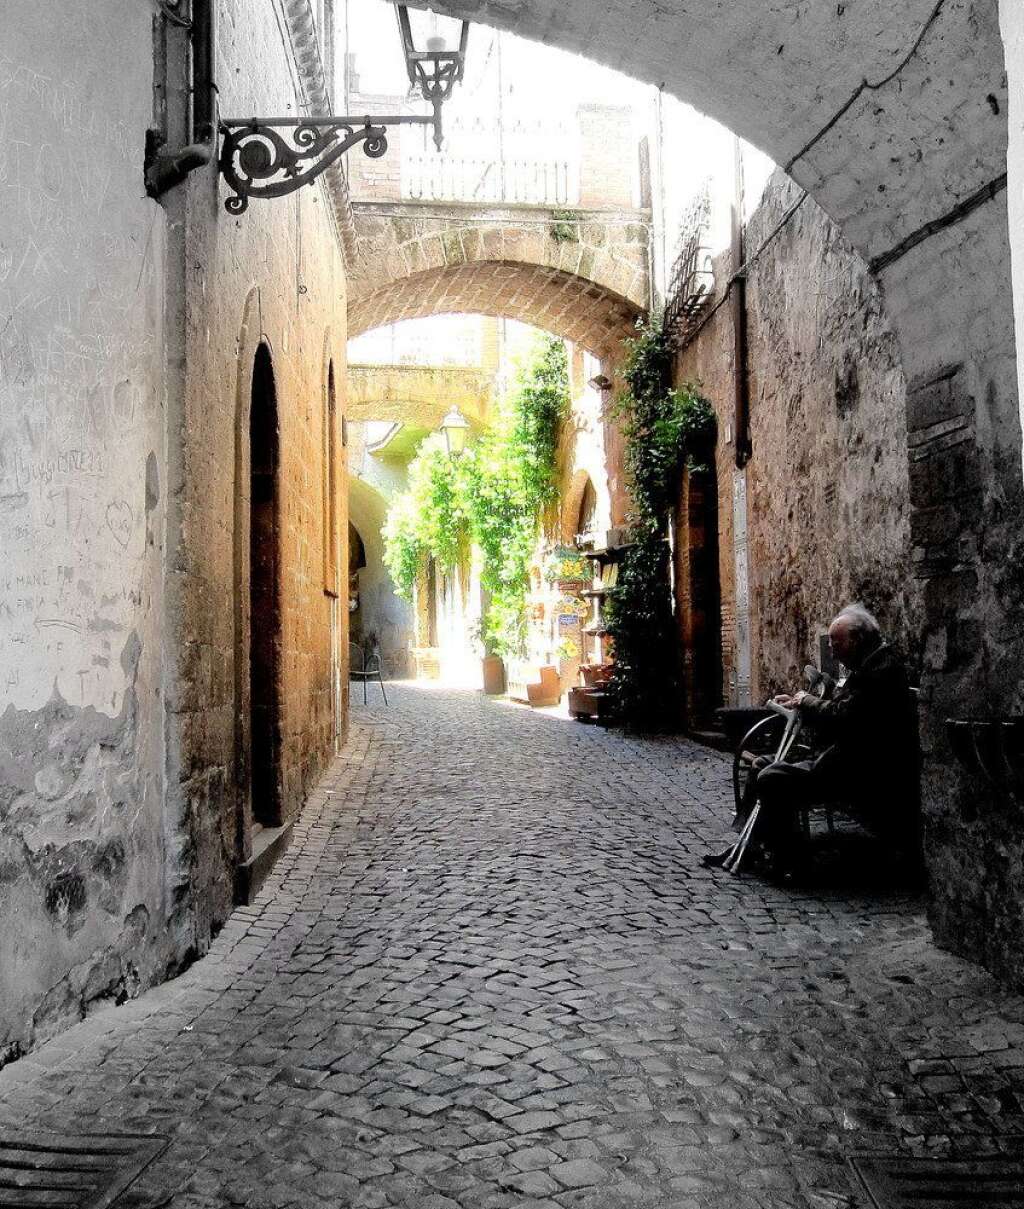 Orvieto - Tours les ruelles de la vieille ville, surplombées de plusieurs passerelles volantes.